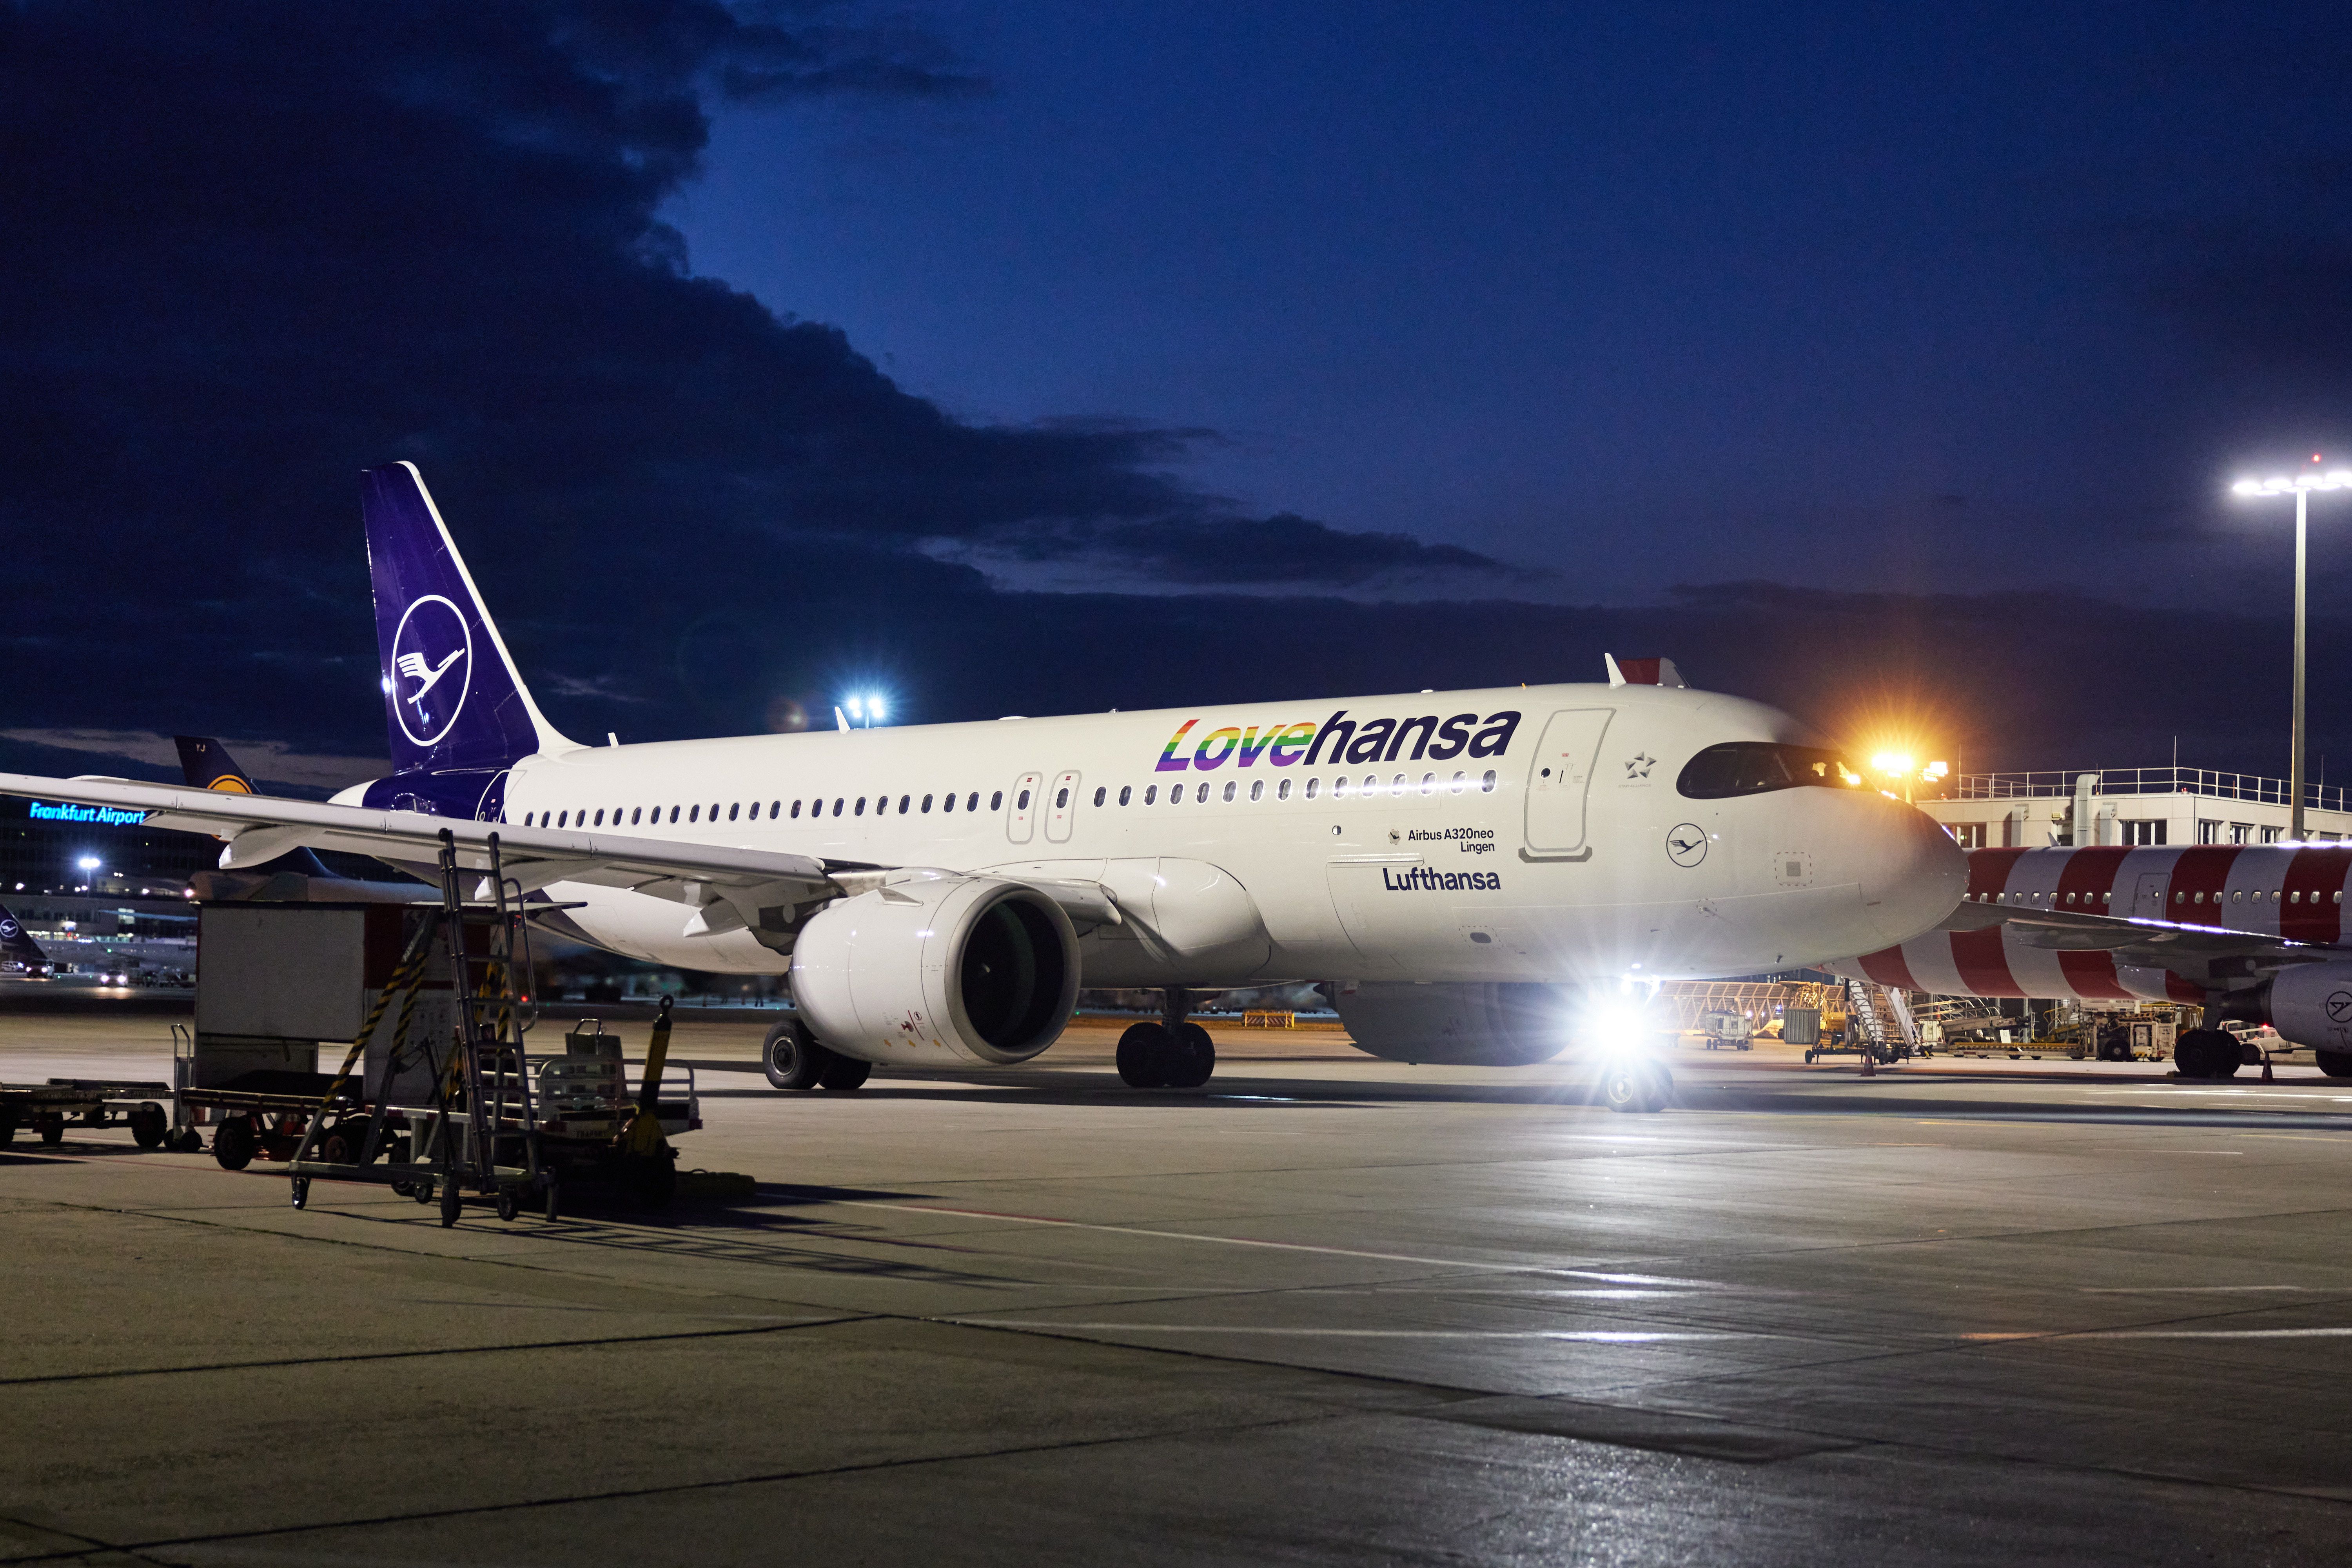 Lovehansa Photo: Lufthansa Group